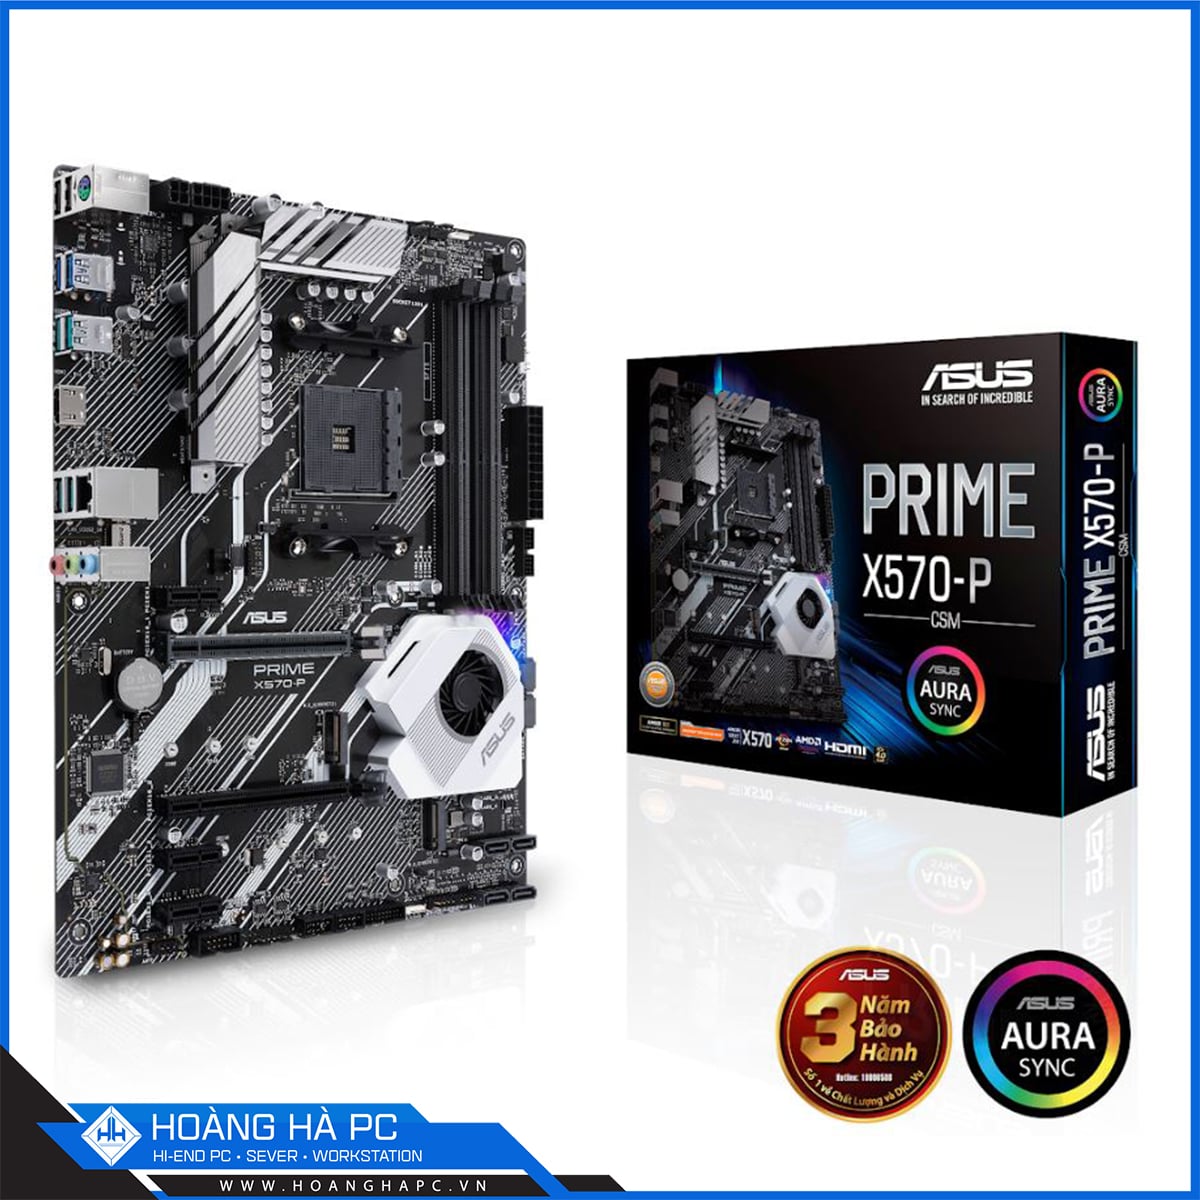 Mainboard ASUS PRIME X570-PRO/CSM AM4 (AMD X570, Socket AM4, 4 Khe Cắm Ram DDR4)